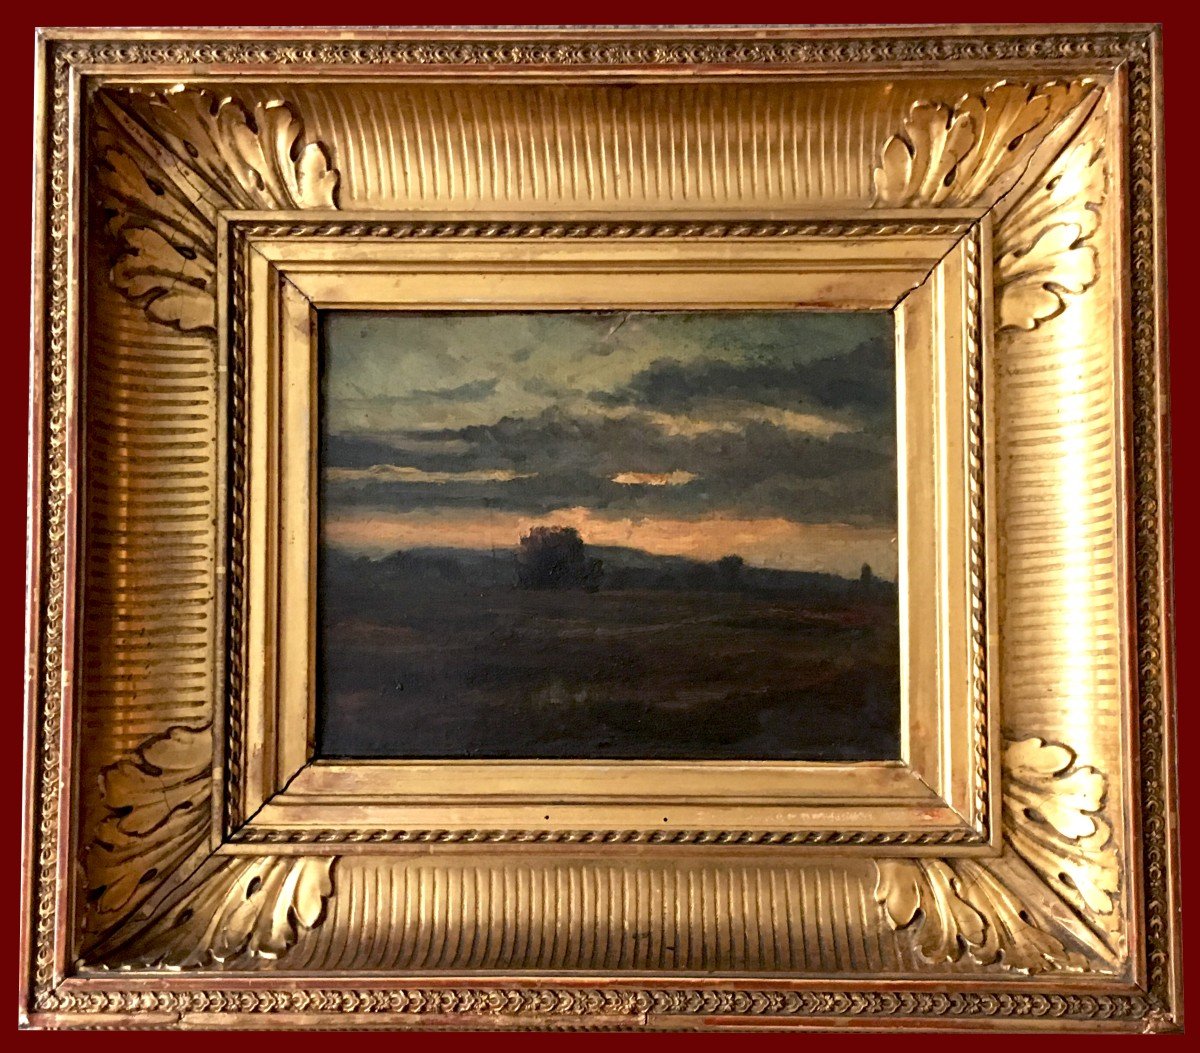 DIAZ DE LA PENA Narcisse (1807-1876) "Paysage" Huile sur toile, Etiquette de vente, Cadre 19e